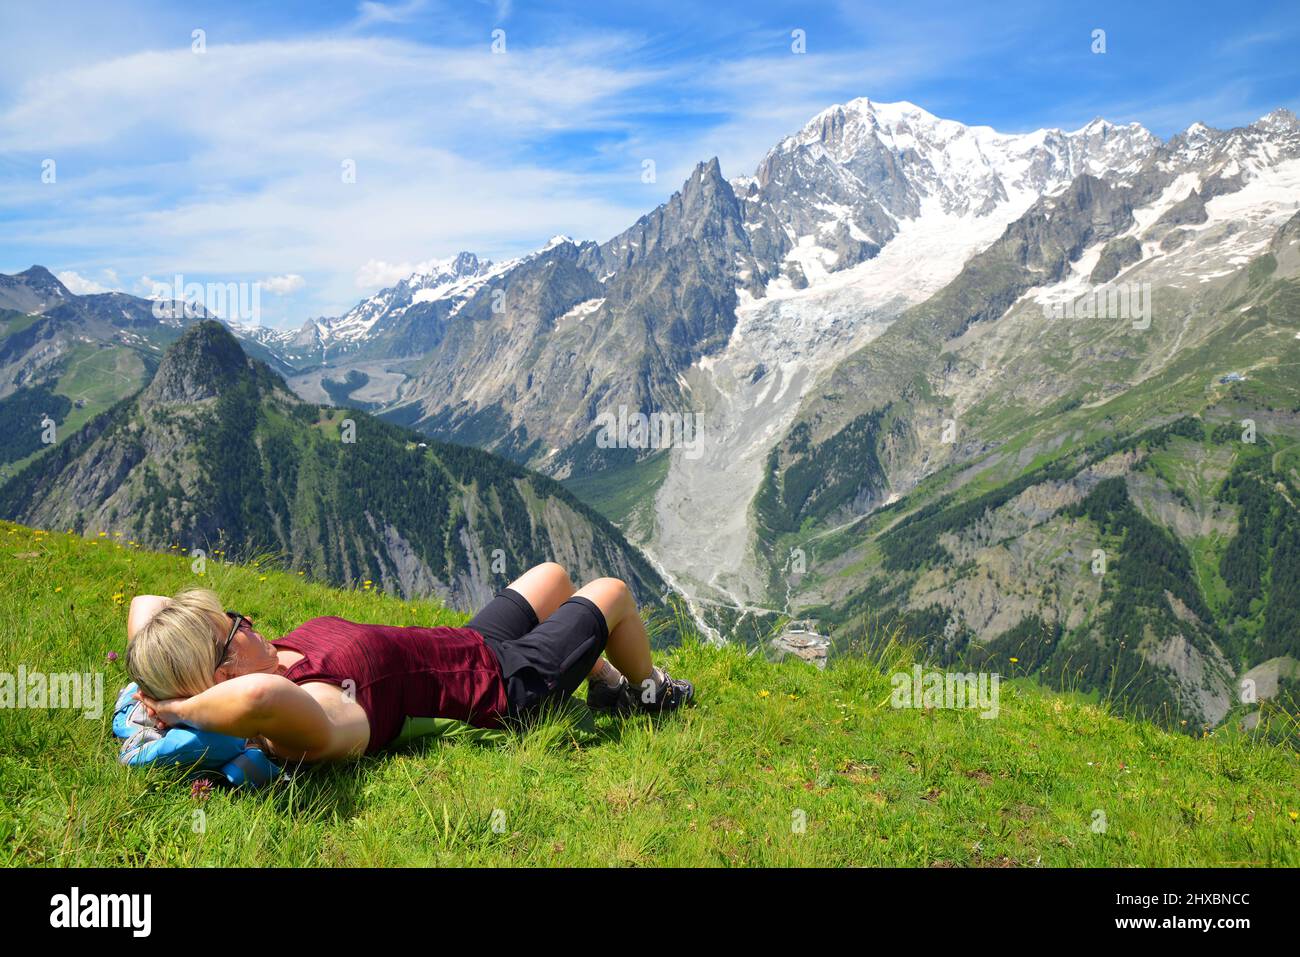 Turista adagiato su un prato in giornata di sole, sullo sfondo della catena montuosa del Monte Bianco. Valle d'Aosta, Italia. Foto Stock